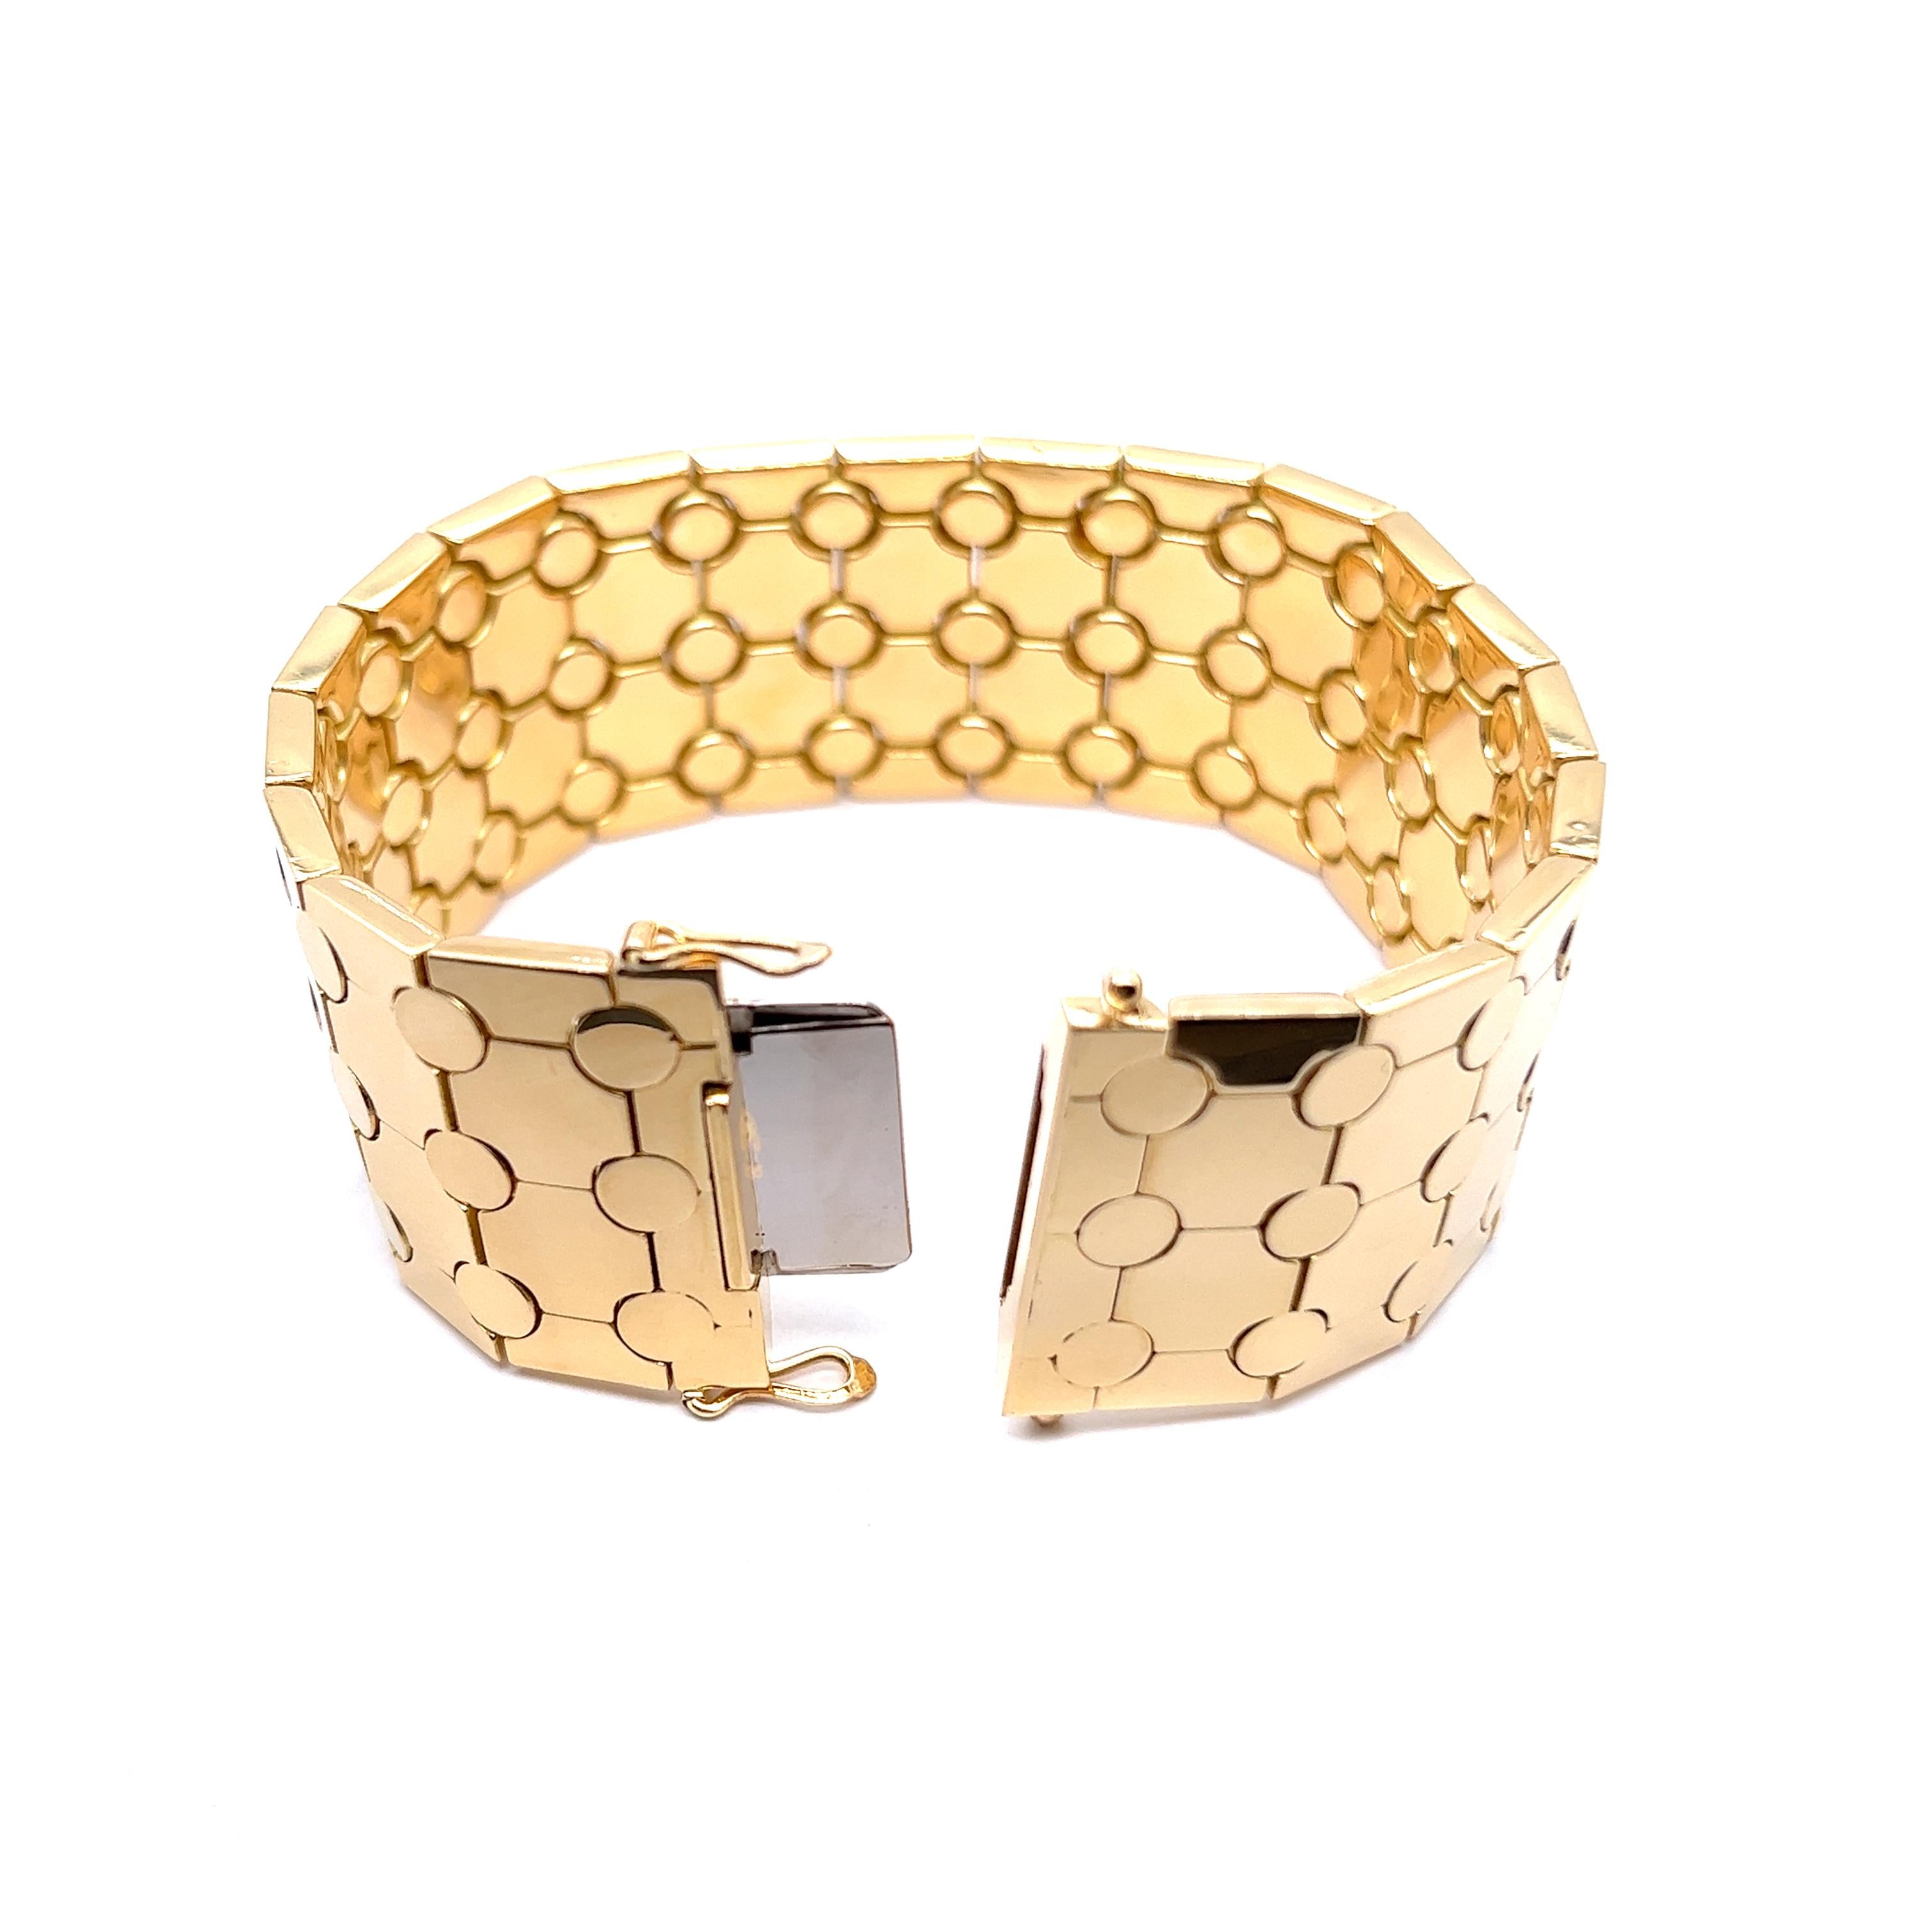 Voici le summum de l'opulence - un bracelet en or jaune 18 carats, véritable chef-d'œuvre de qualité et d'élégance. Ce luxueux bracelet est orné d'un motif graphique fascinant rappelant un nid d'abeilles, méticuleusement gravé sur sa surface de 2,7